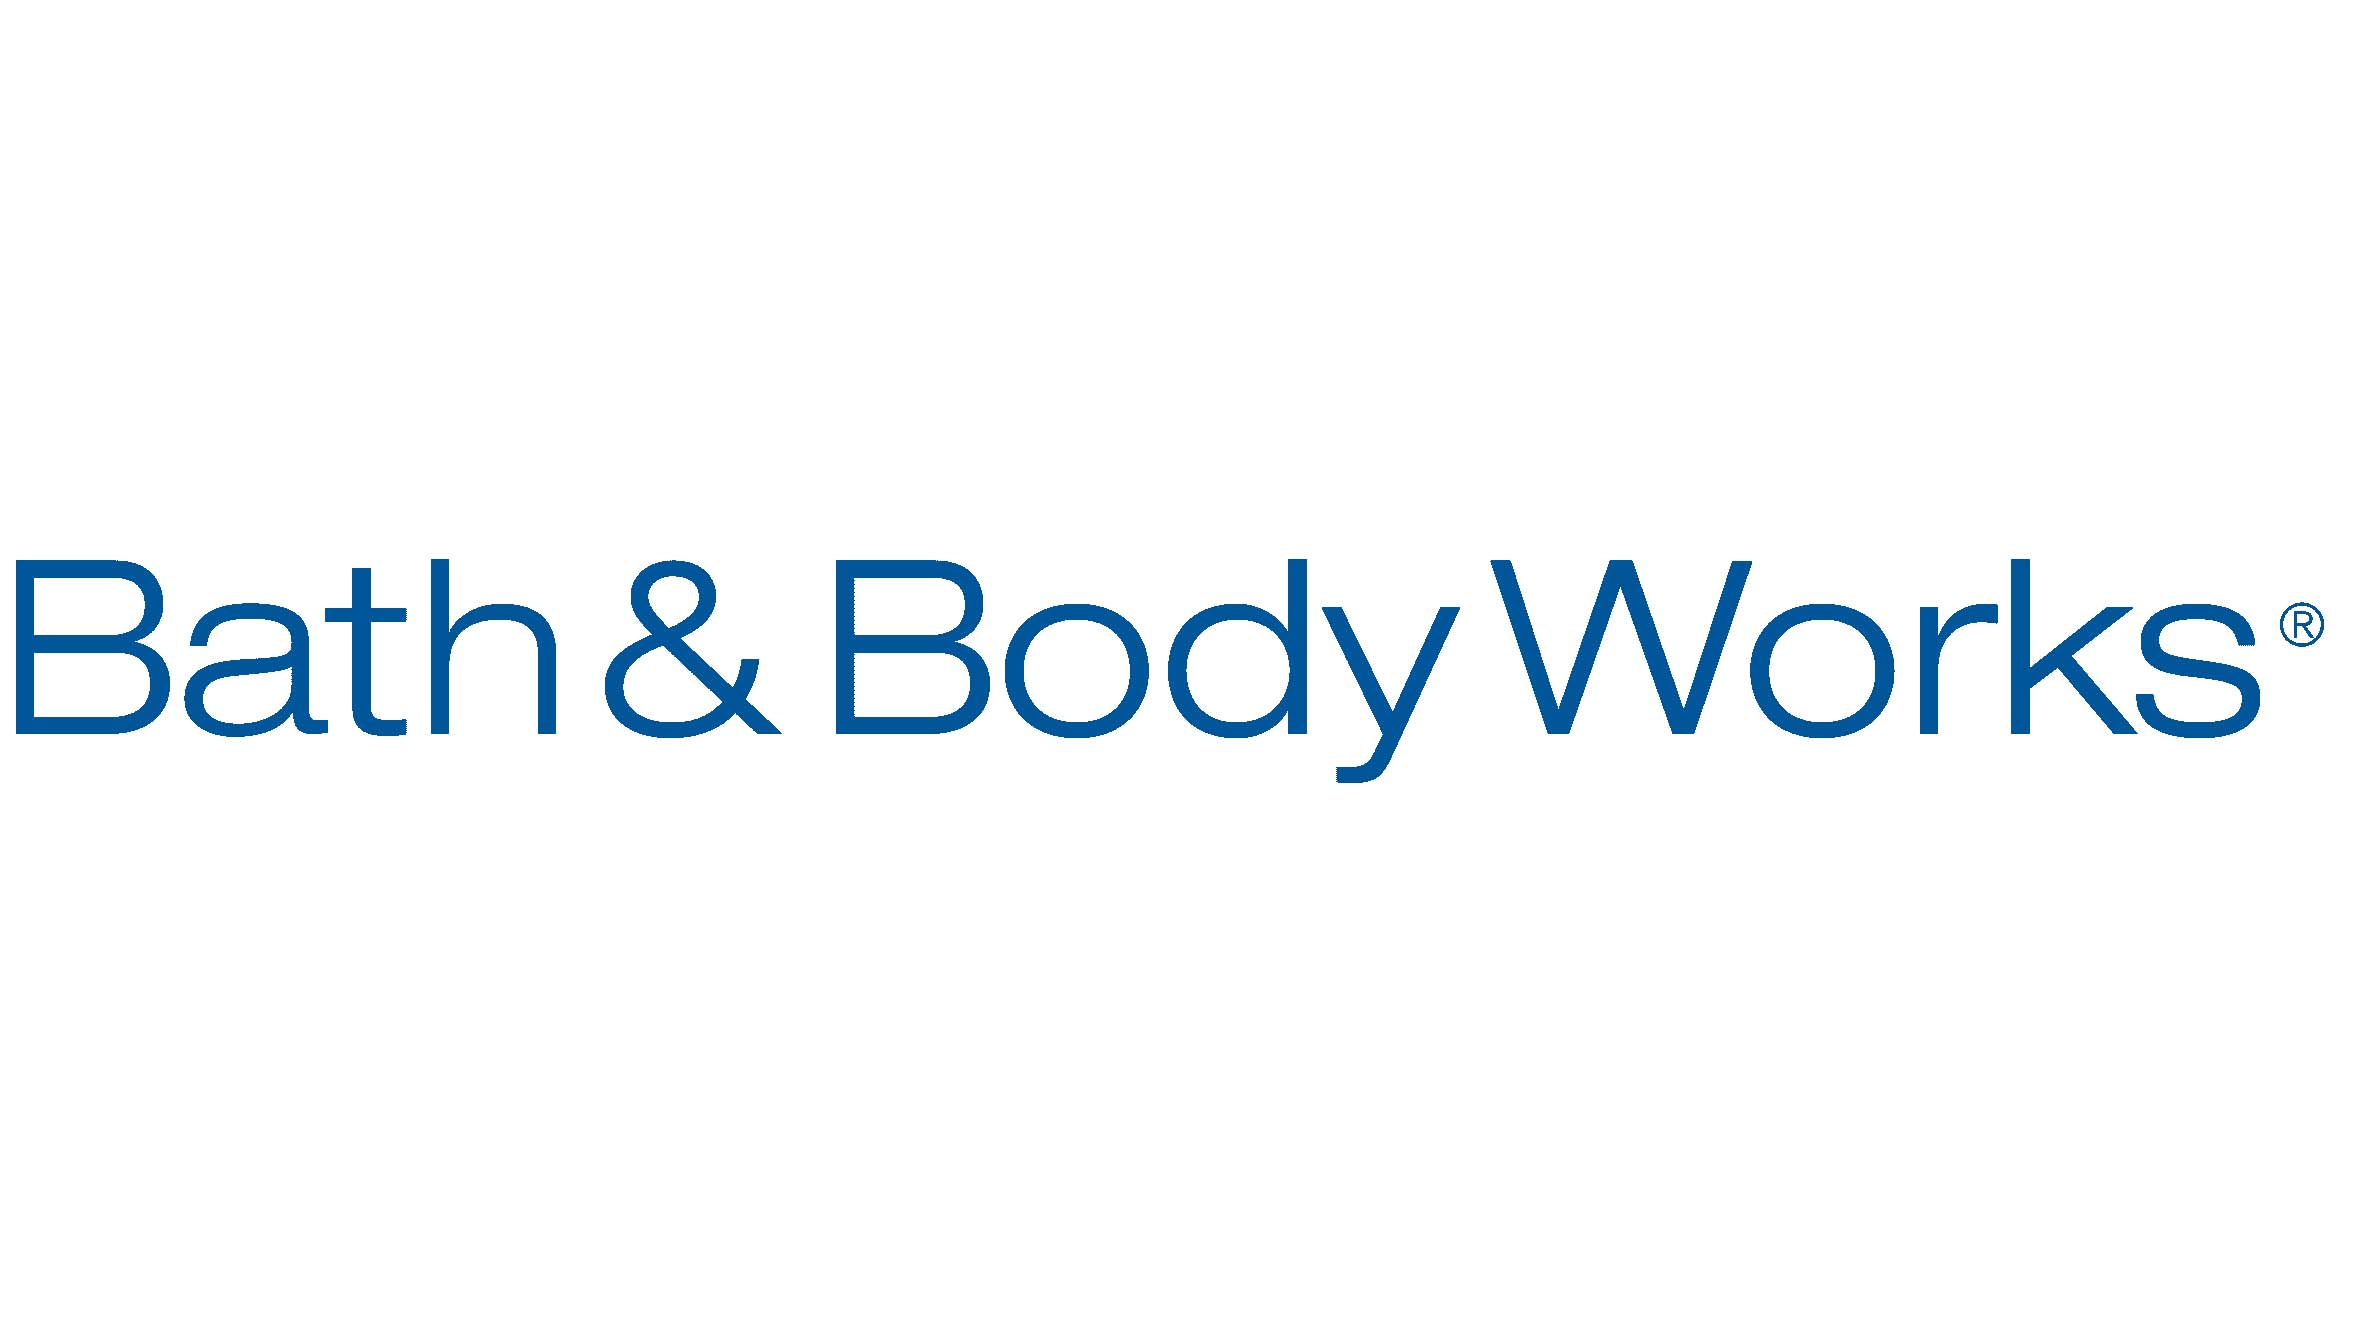 Mẫu thiết kế logo thương hiệu công ty BATH & BODY WORKS